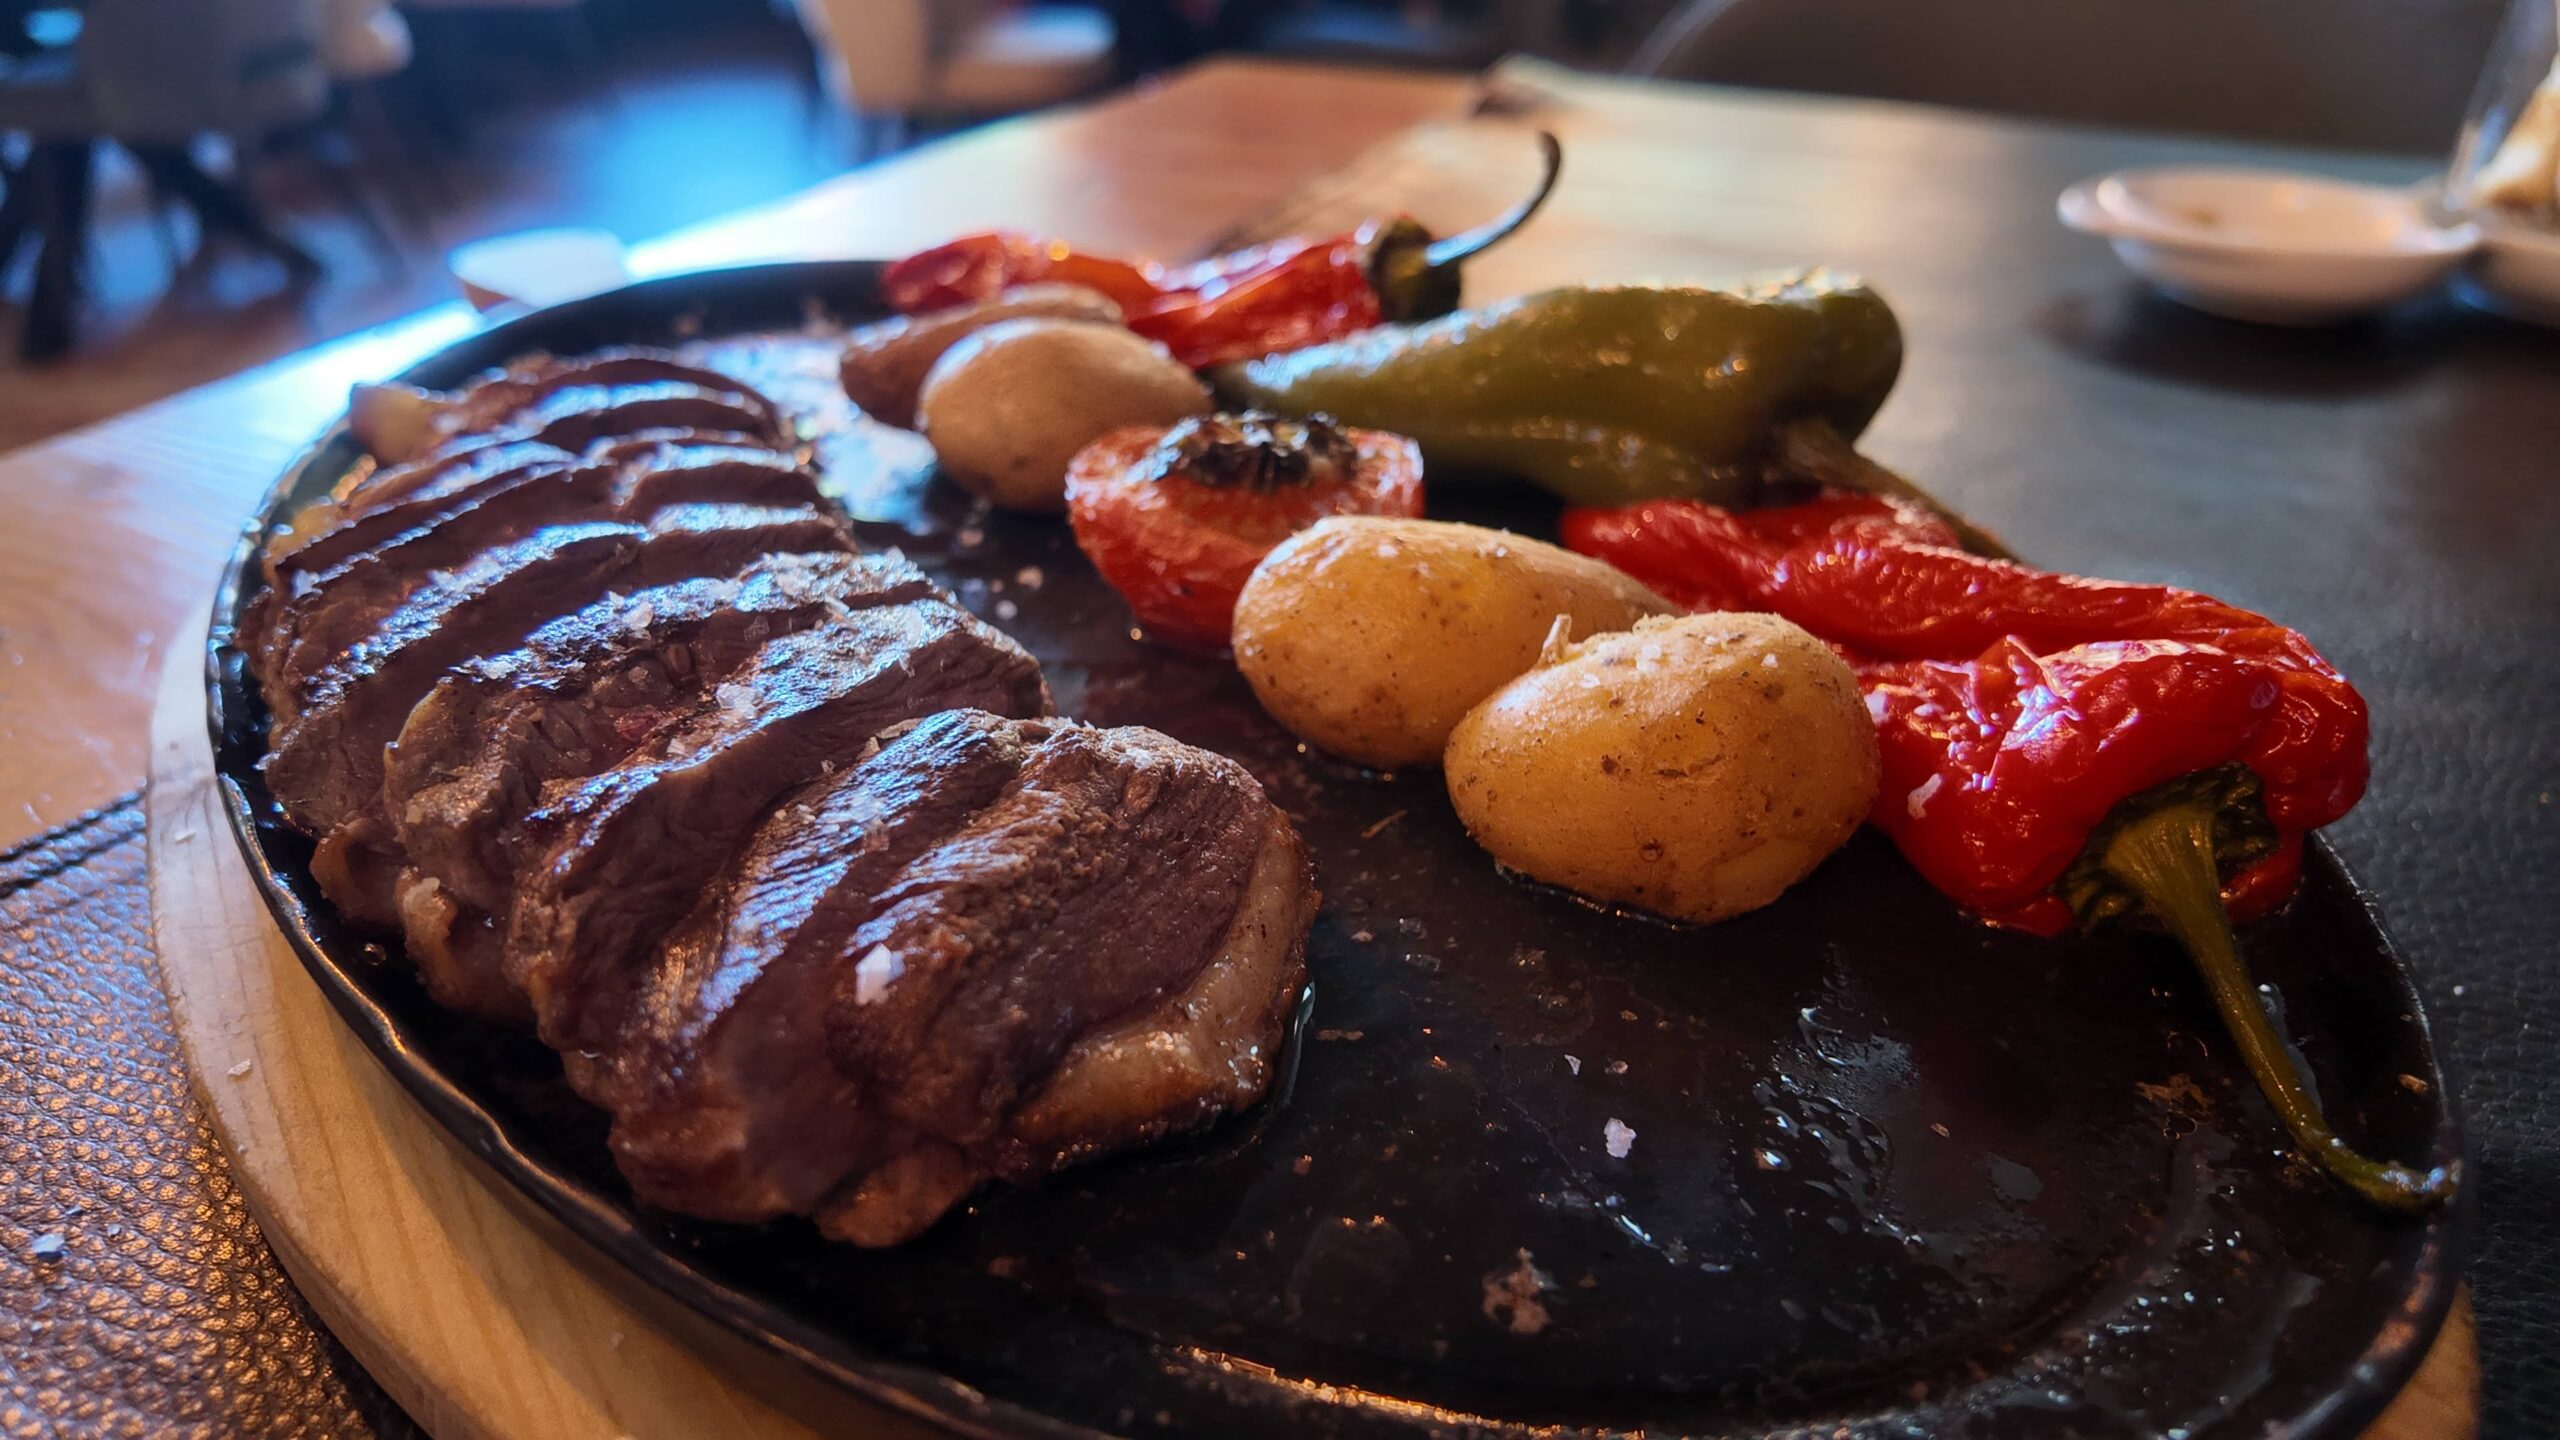 Le Restaurant La Sangría Grill à Meritxell est très apprécié pour ses viandes à la brasa y compris le magret de canard. Ce restaurant est connu pour sa cuisine de haute qualité, influencée par la gastronomie française et méditerranéenne.